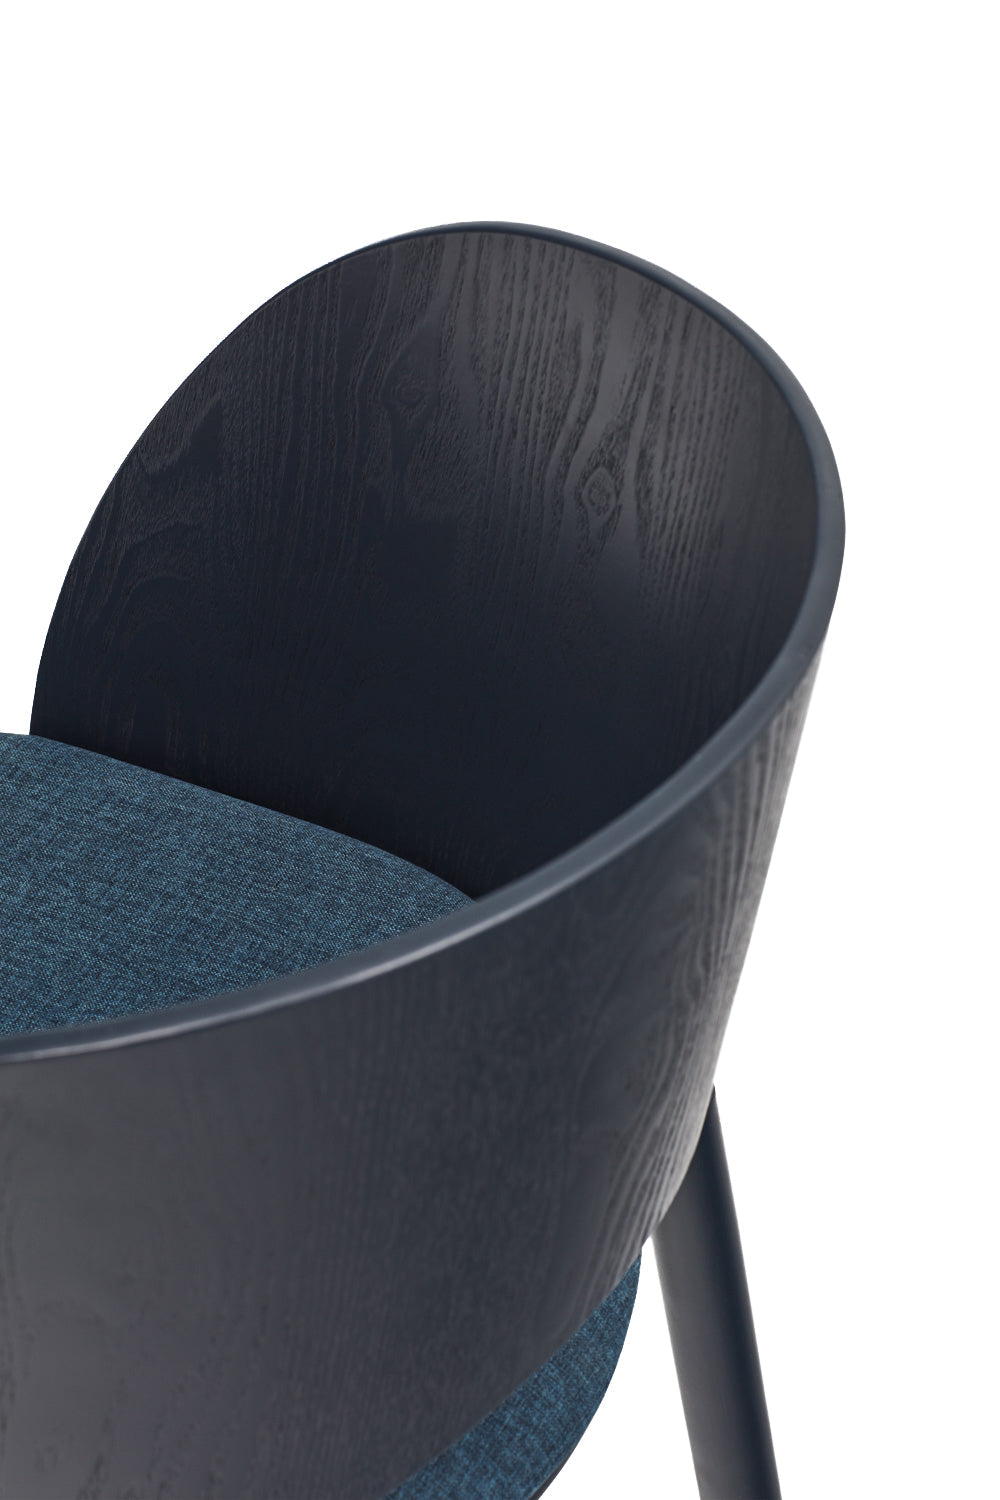 DAM chair blue